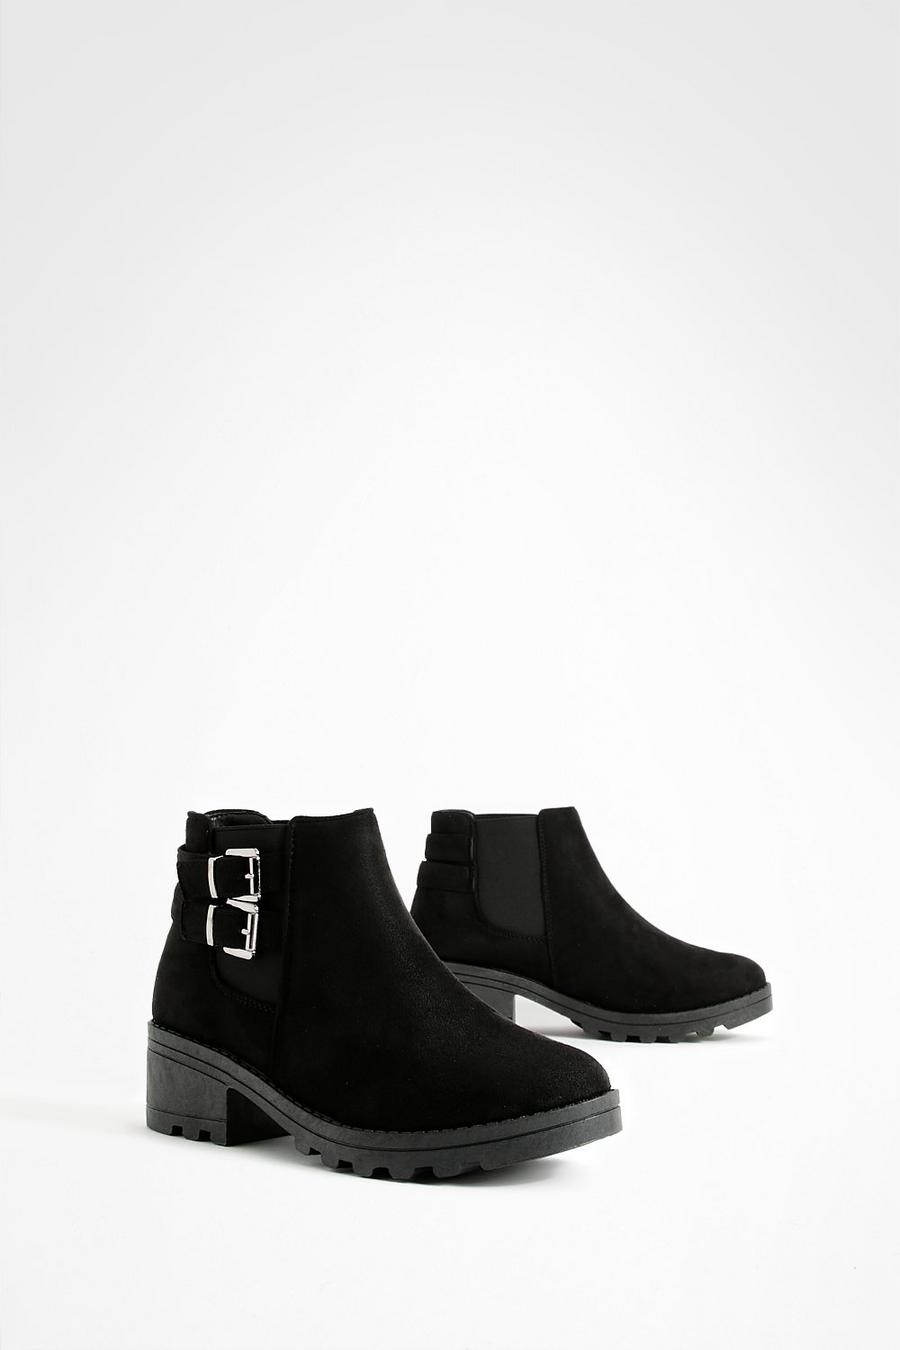 Chelsea-Stiefel mit Blockabsatz und Schnallen-Detail, Schwarz black